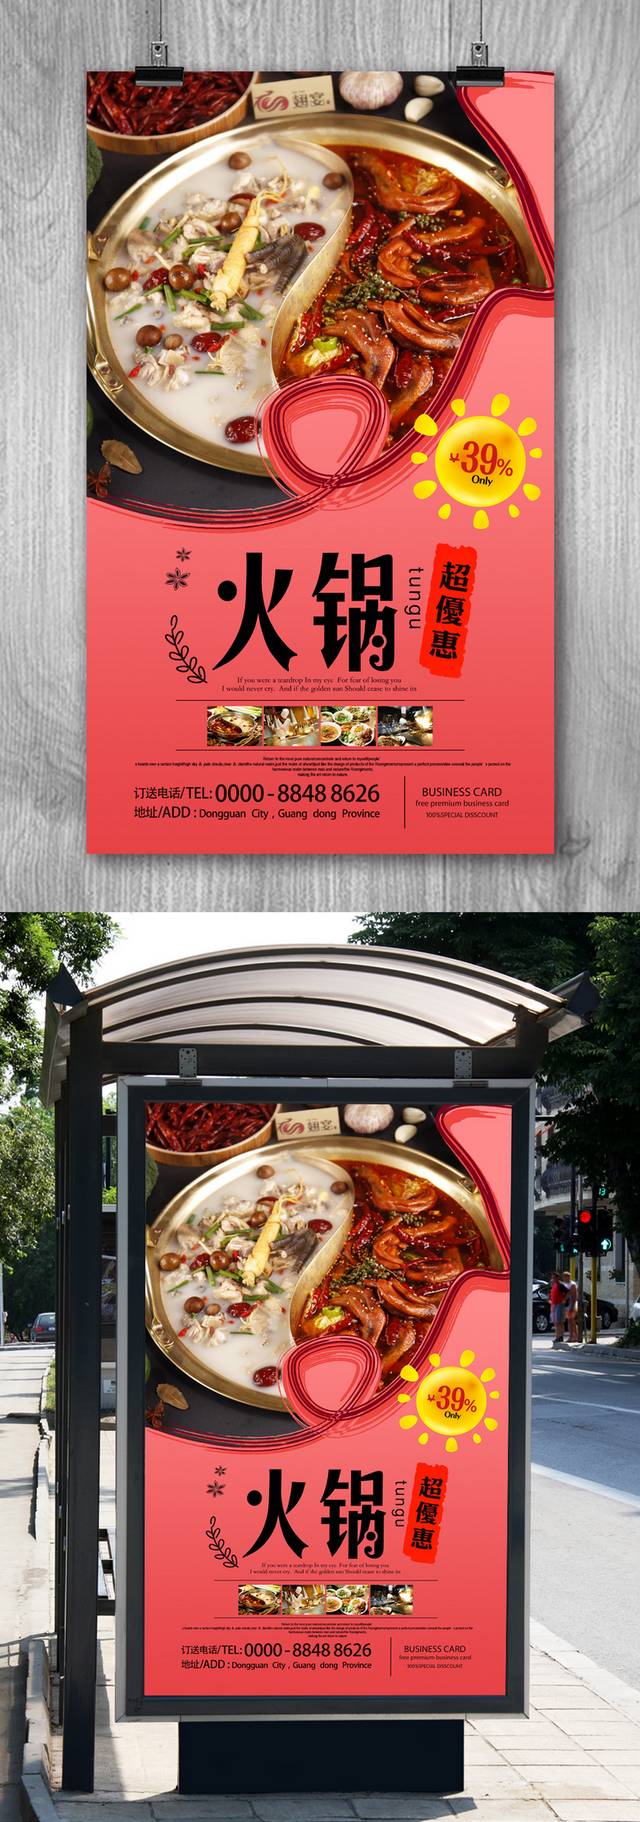 火锅宣传海报广告设计